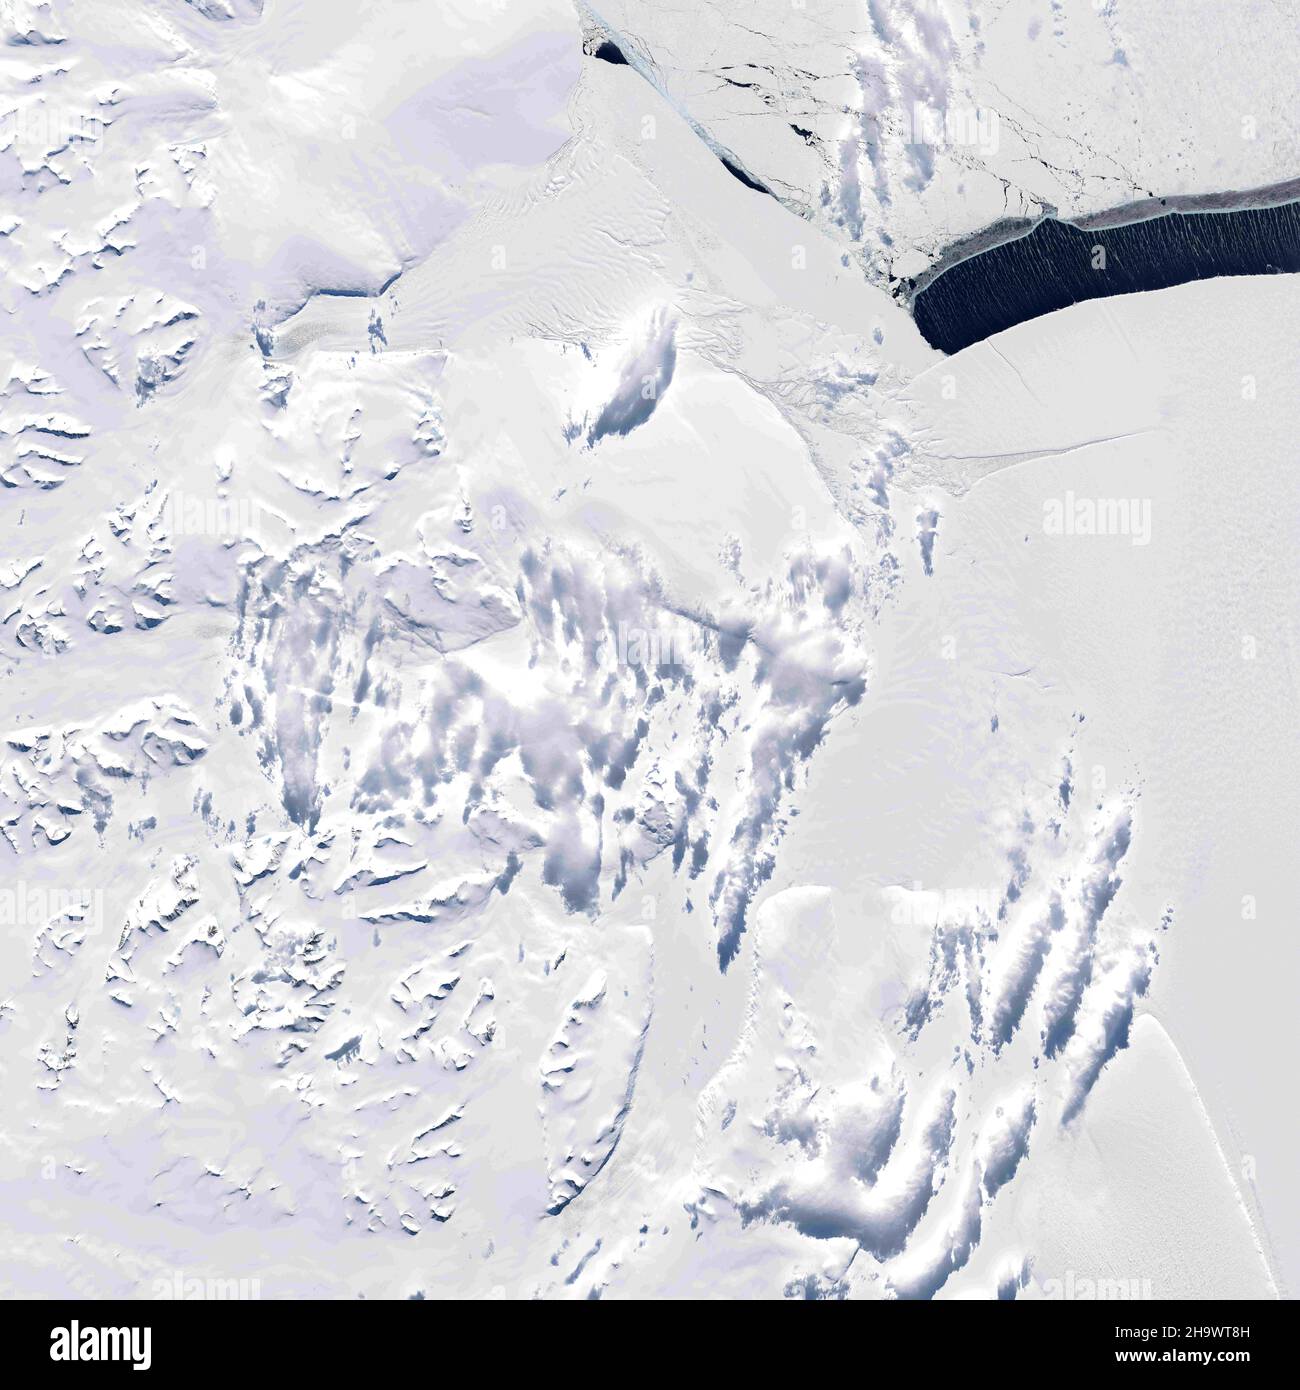 Antartide. 20th Nov 2021. La coperta congelata di ghiaccio marino in cima all'Oceano Meridionale è uno studio in estremi. Dopo aver cresciuto fino a coprire 18 milioni di chilometri quadrati di mare in inverno, il ghiaccio quasi completamente si scioglie ogni estate. Ma anche durante questa fusione annuale, le temperature durante la primavera australe possono ancora essere abbastanza fredde da produrre aree localizzate di nuova crescita di ghiaccio intorno all'Antartide. Il risultato è un medley di pattern e texture congelati, visibili in questa immagine acquisita il 20 novembre 2021, con l'Operational Land Imager (oli) su Landsat 8. Mostra una serie di ghiaccio Ty Foto Stock